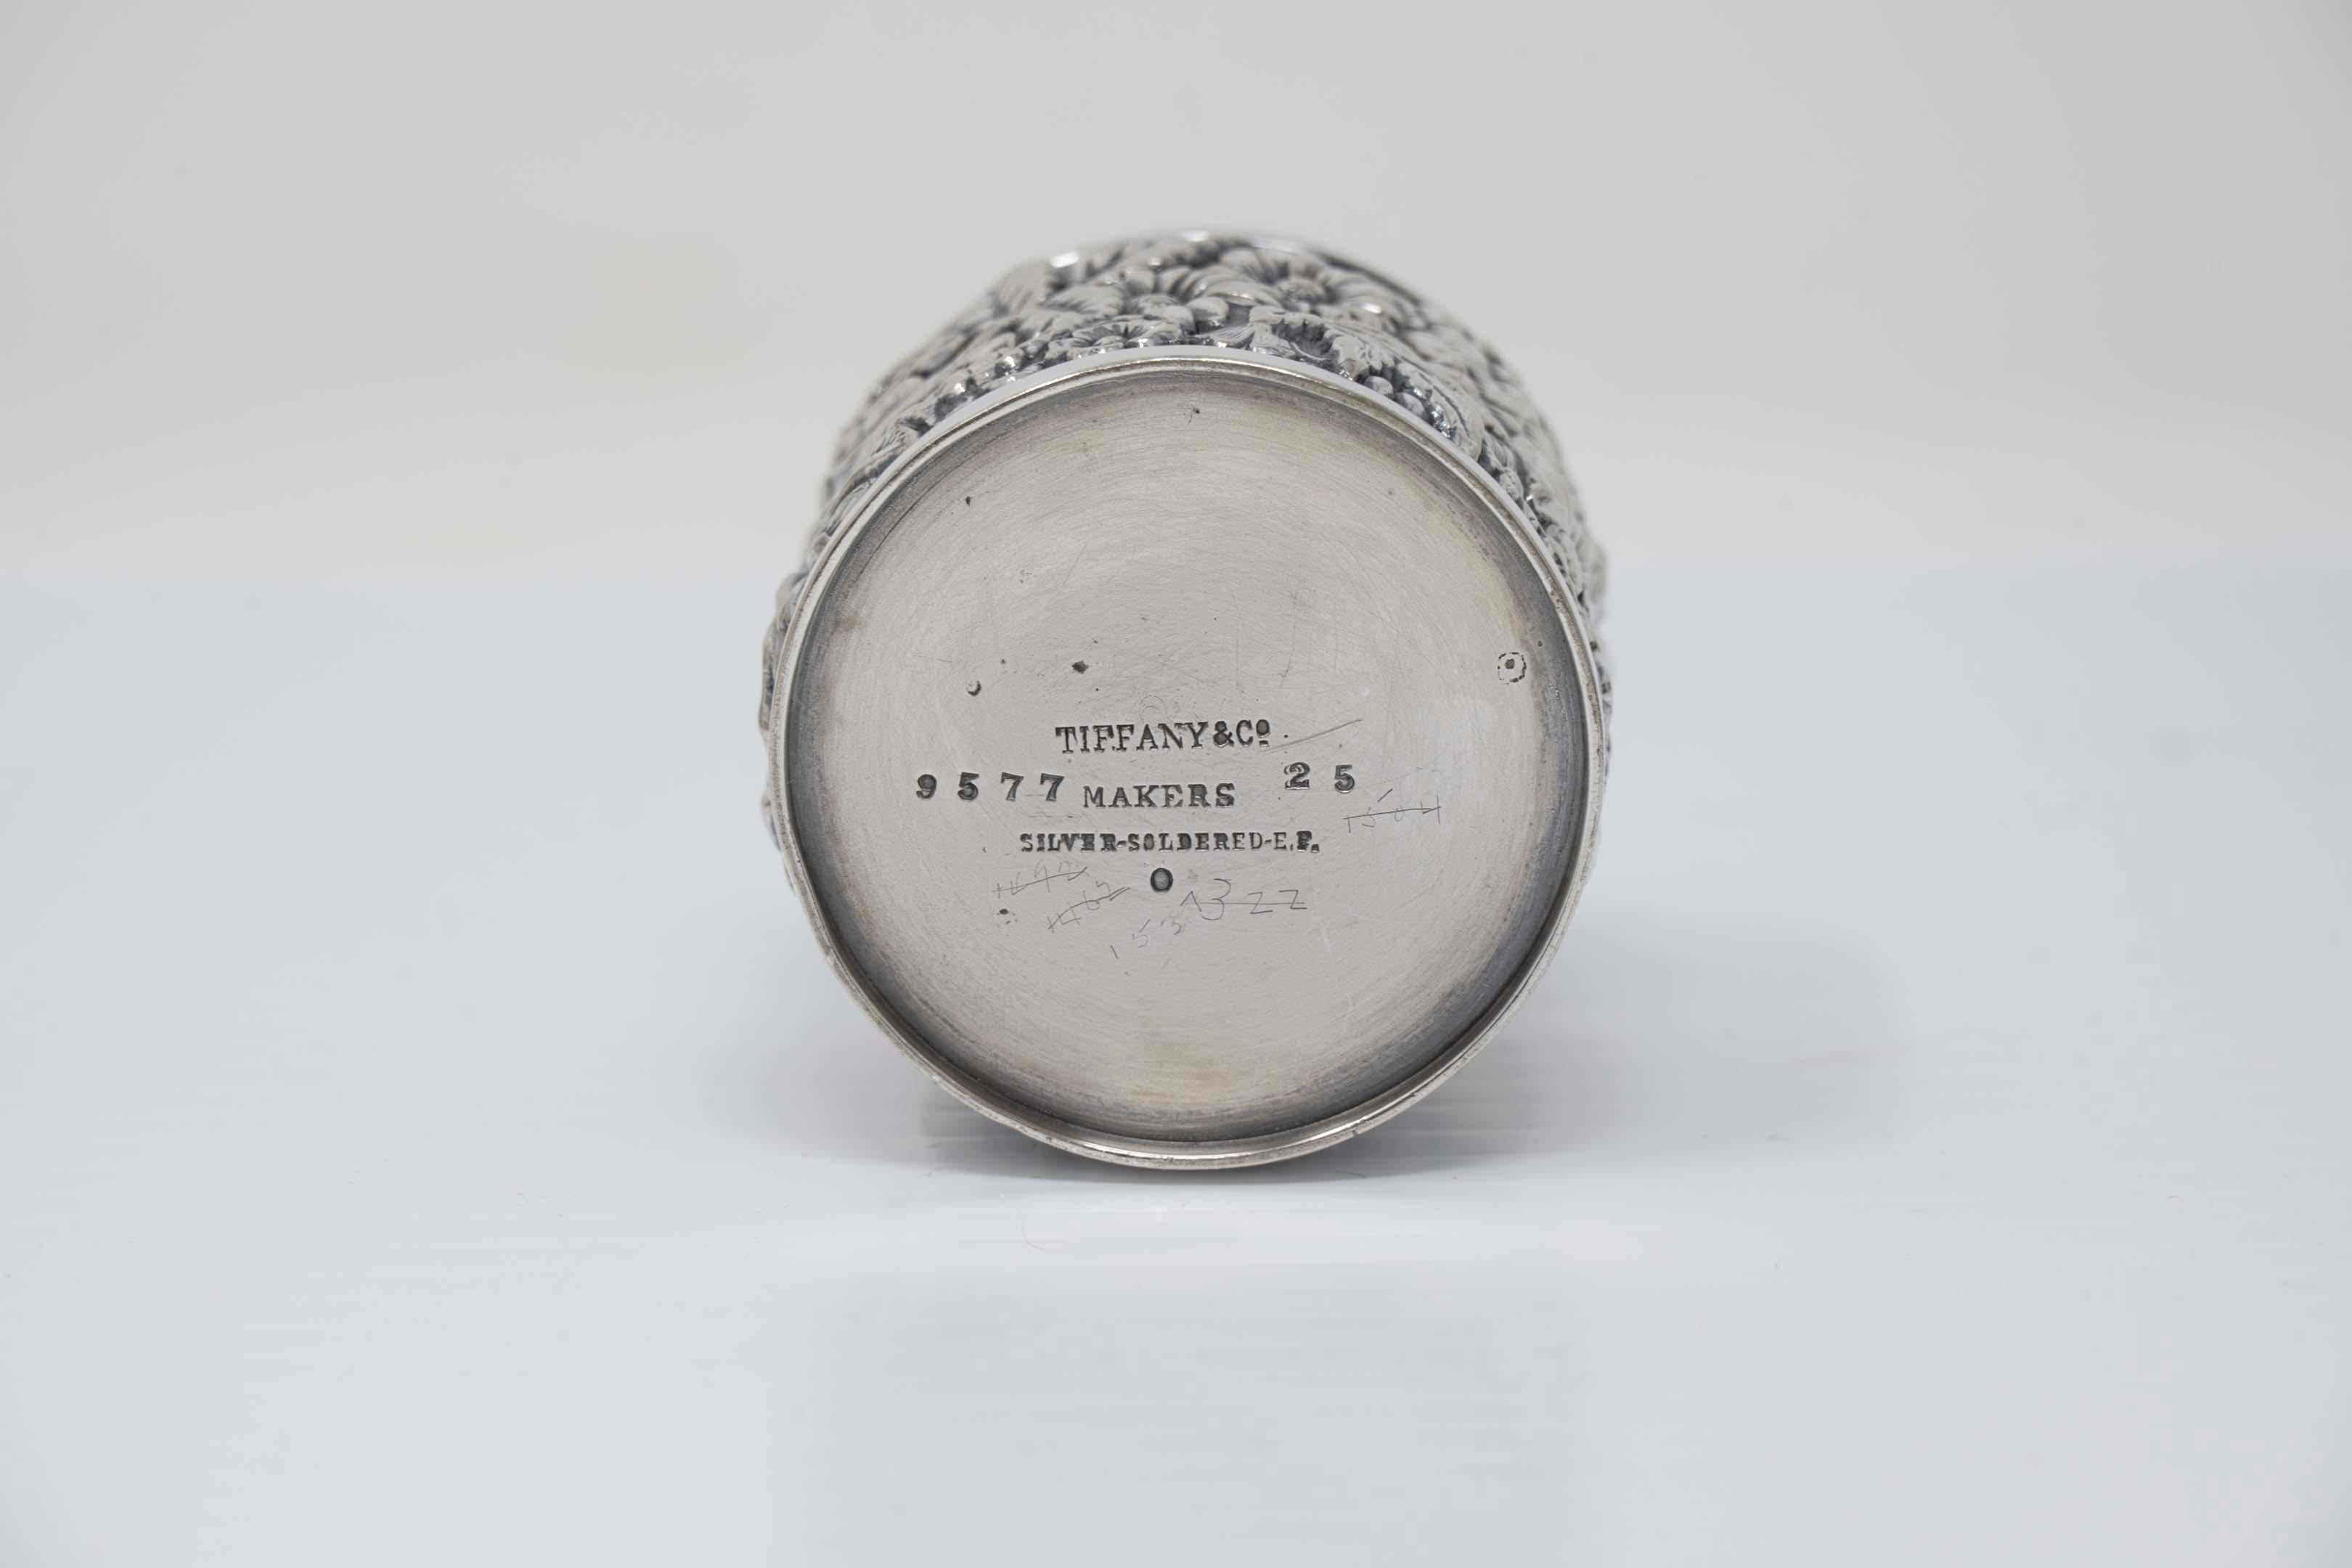 Tiffany and Co makers, 9577-25 porte cure-dents EF en argent soudé. Mesure 40 mm x 44 mm de diamètre, marqué à la base. En bon état.
